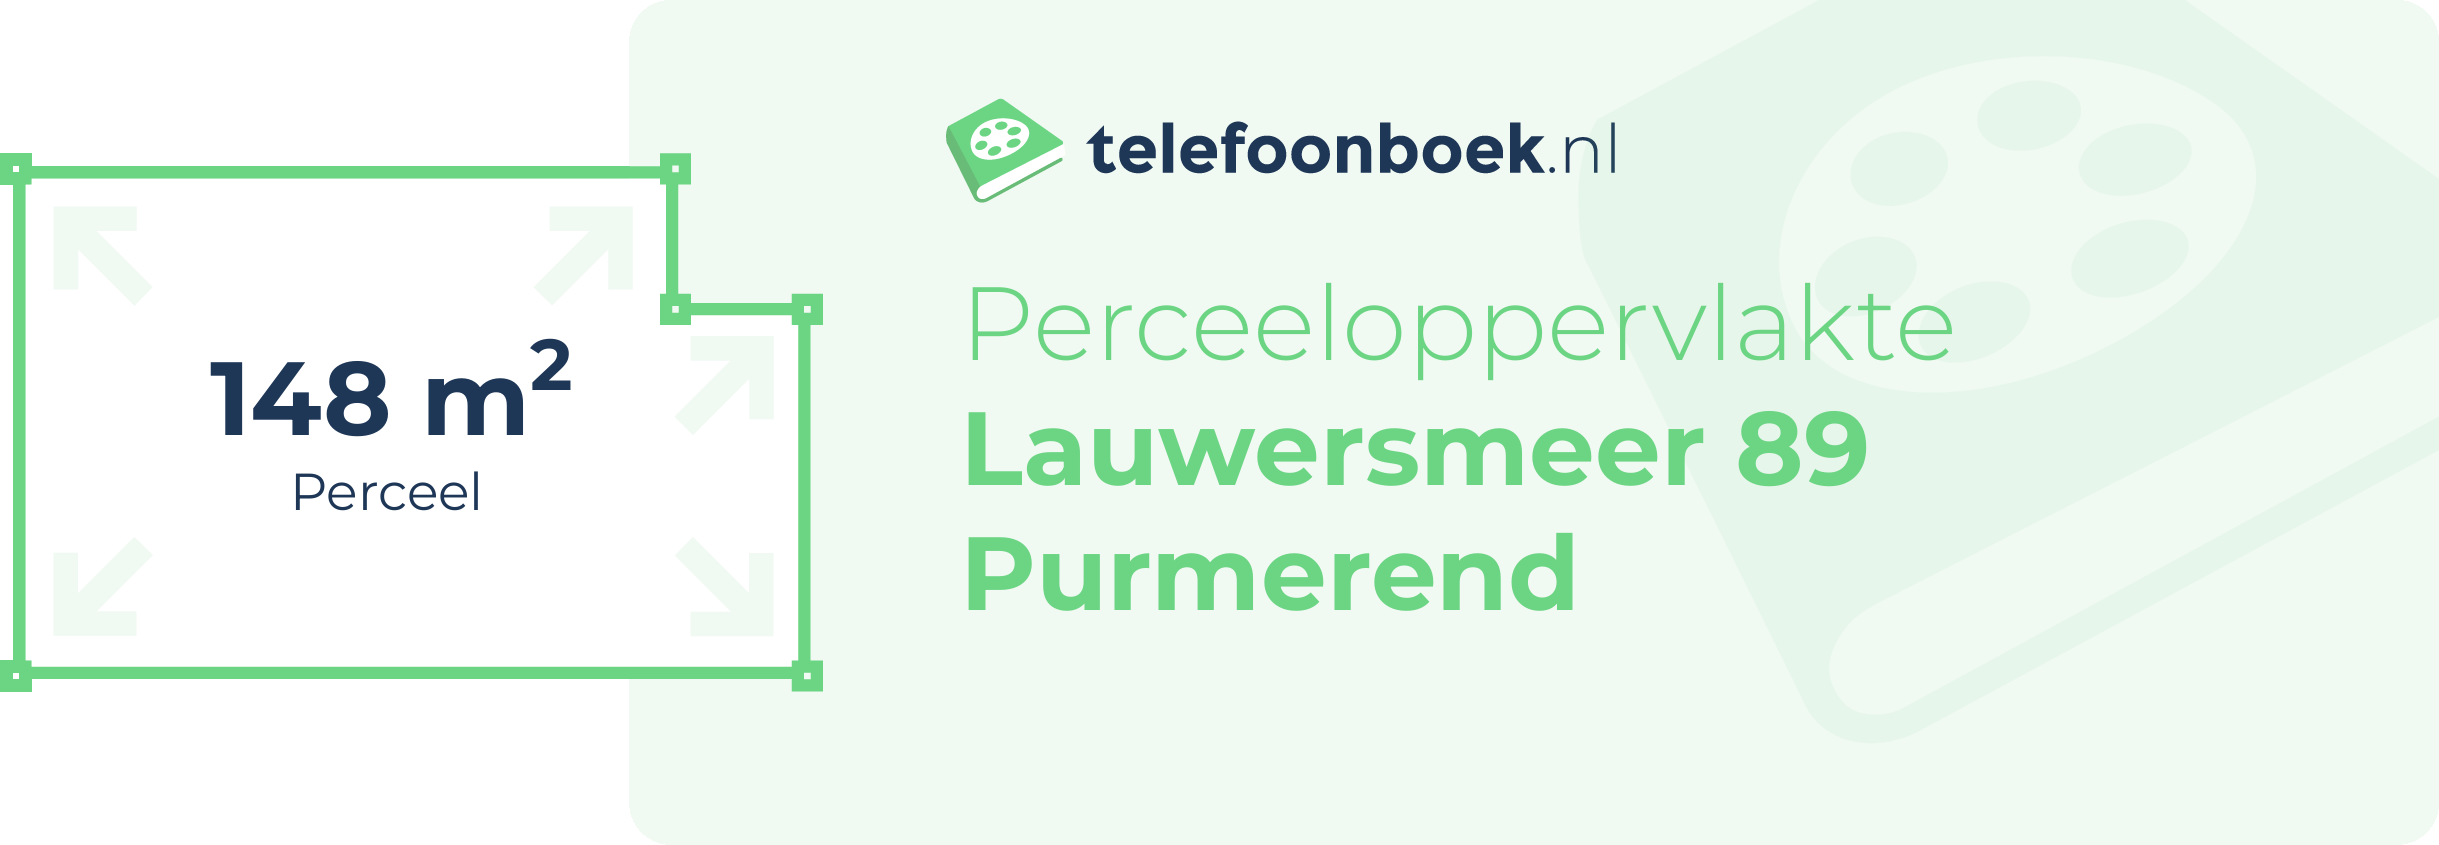 Perceeloppervlakte Lauwersmeer 89 Purmerend